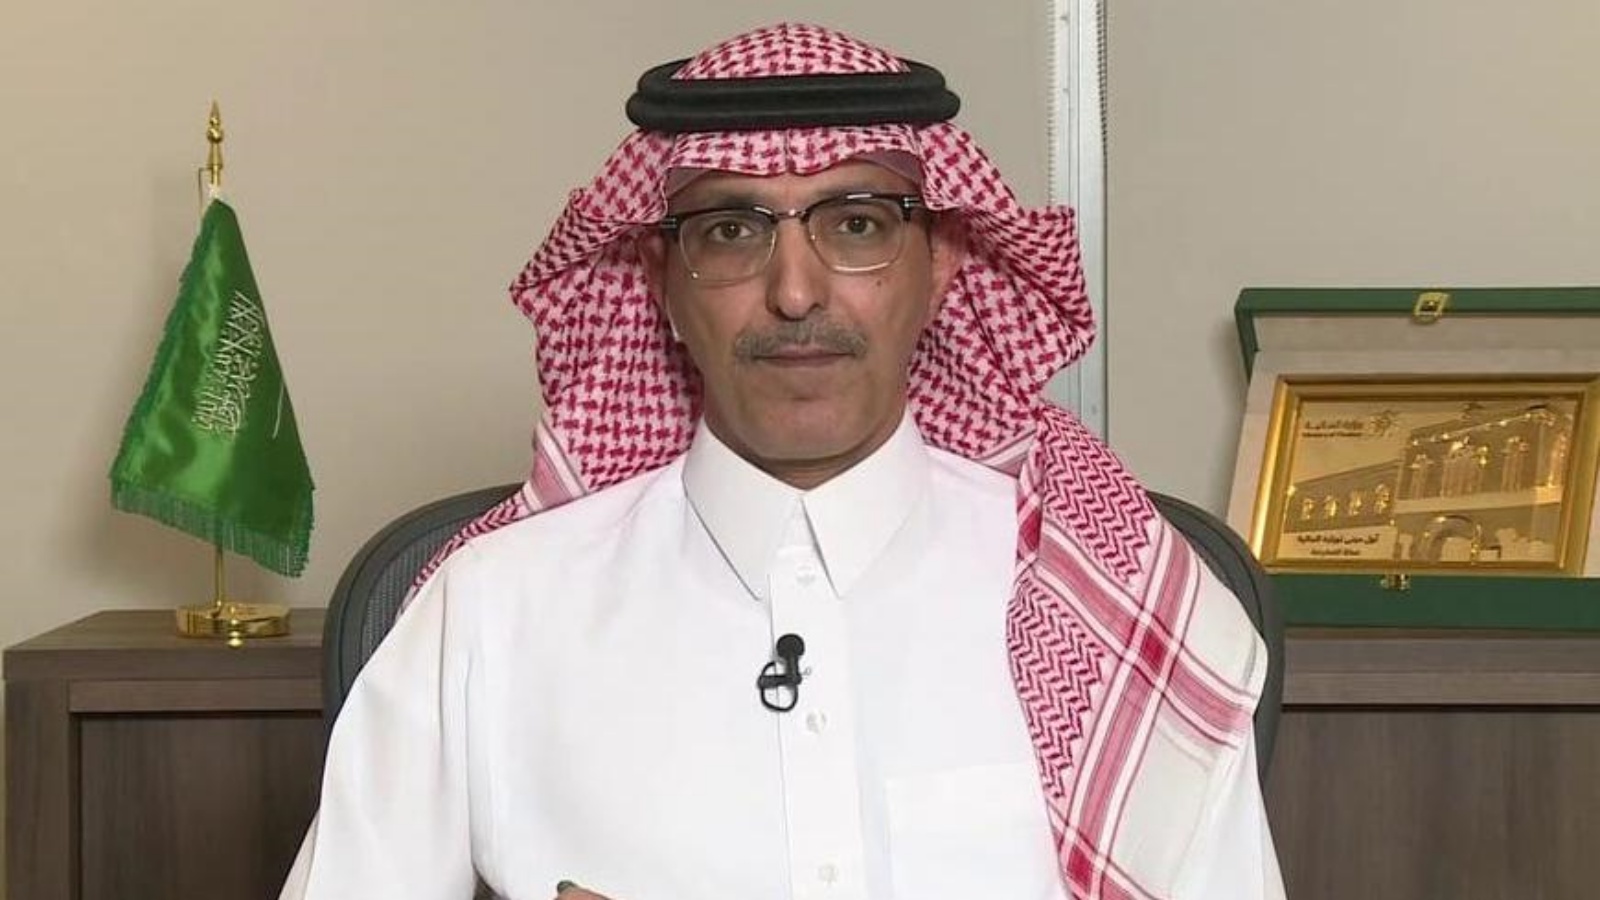 وزير المالية السعودي بين أن الدعم الحكومي ساهم باحتواء أزمة كورونا